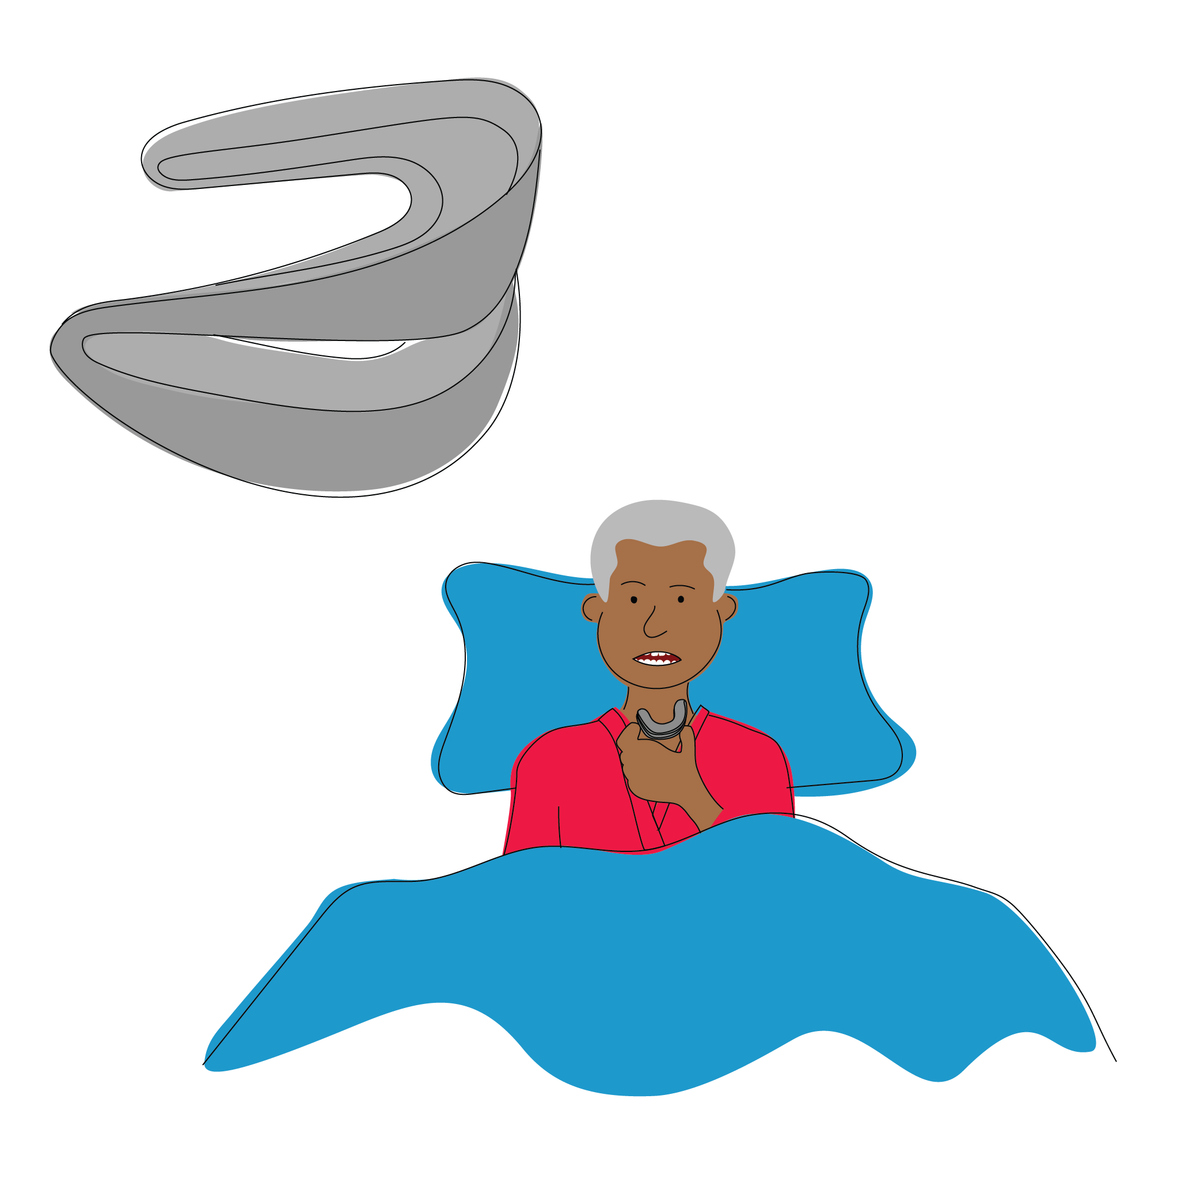 Mouthguards for sleep apnea